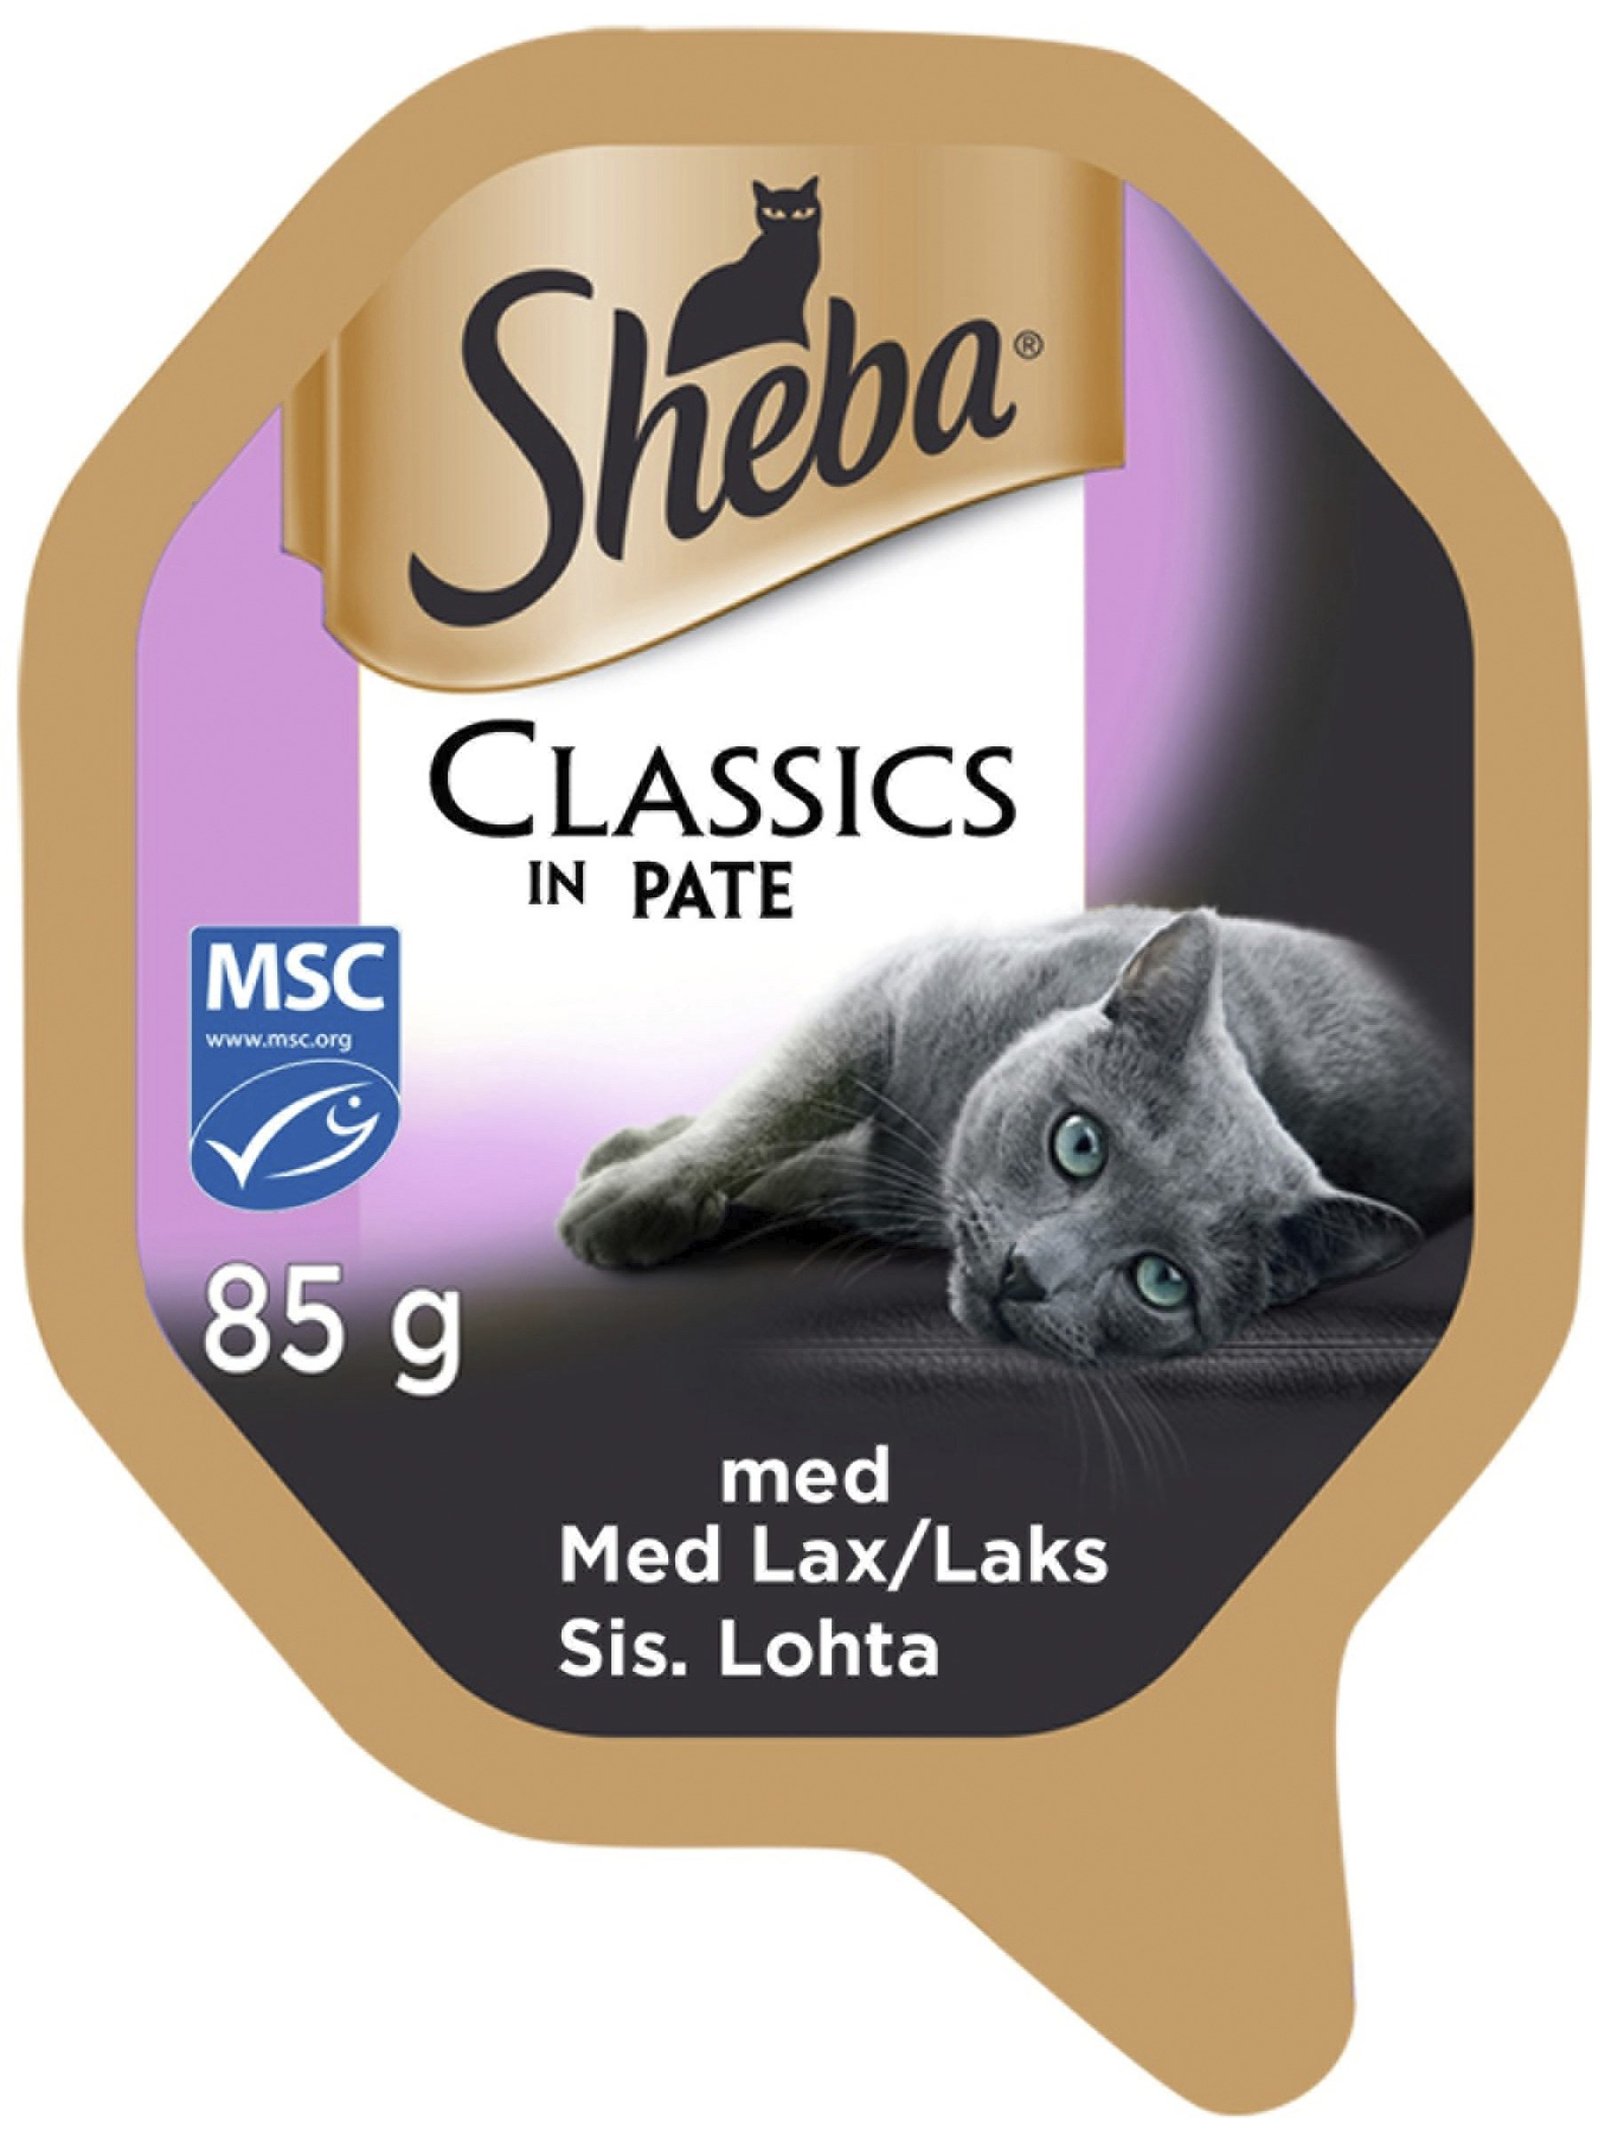 Sheba Classics in Pate Lax 85g